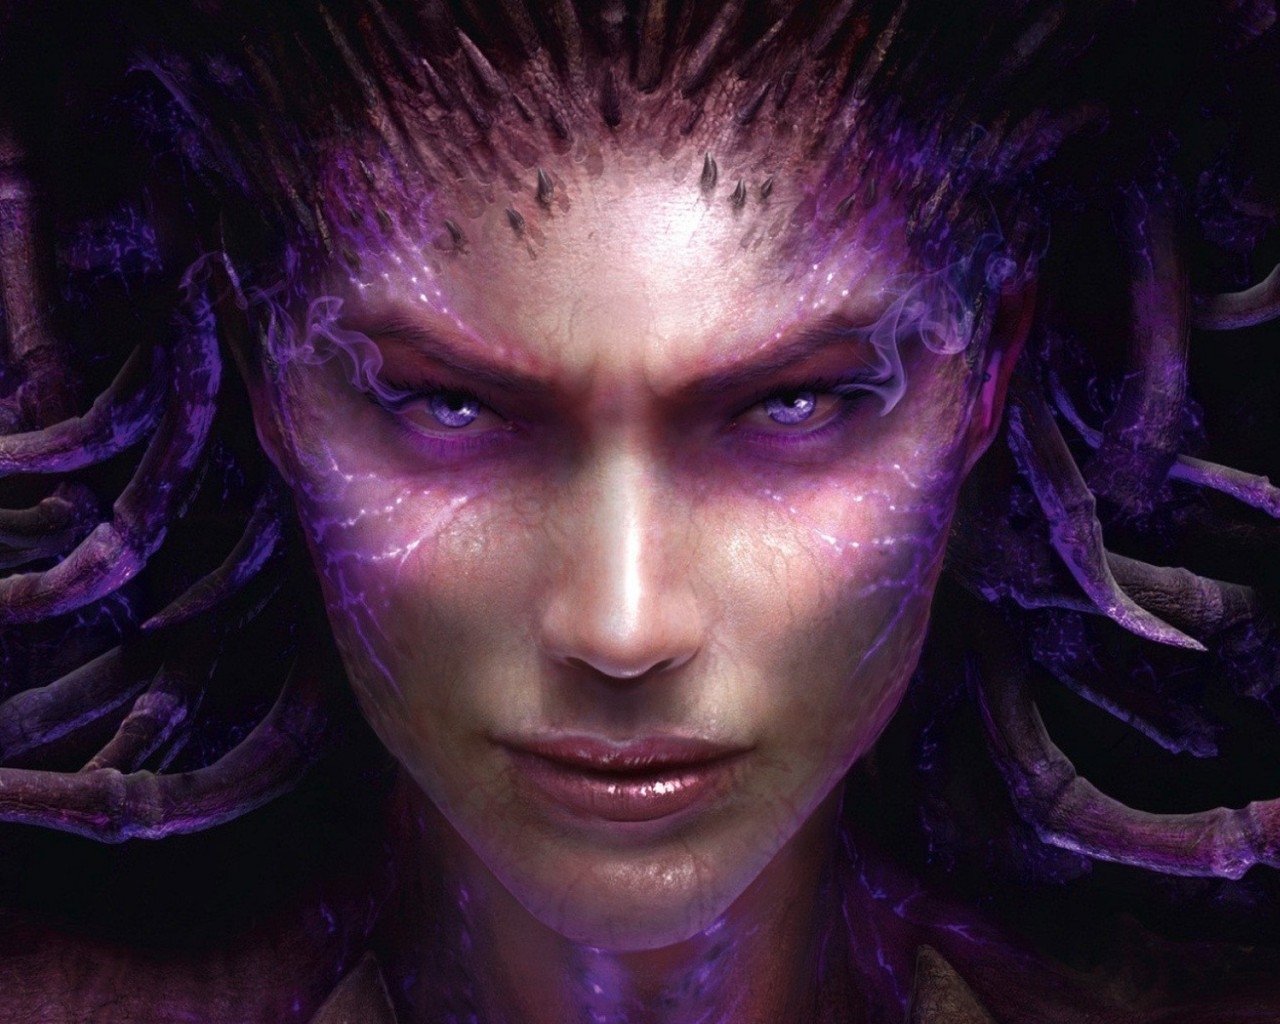 Sarah Kerrigan StarCraft 2 for 1280 x 1024 resolution